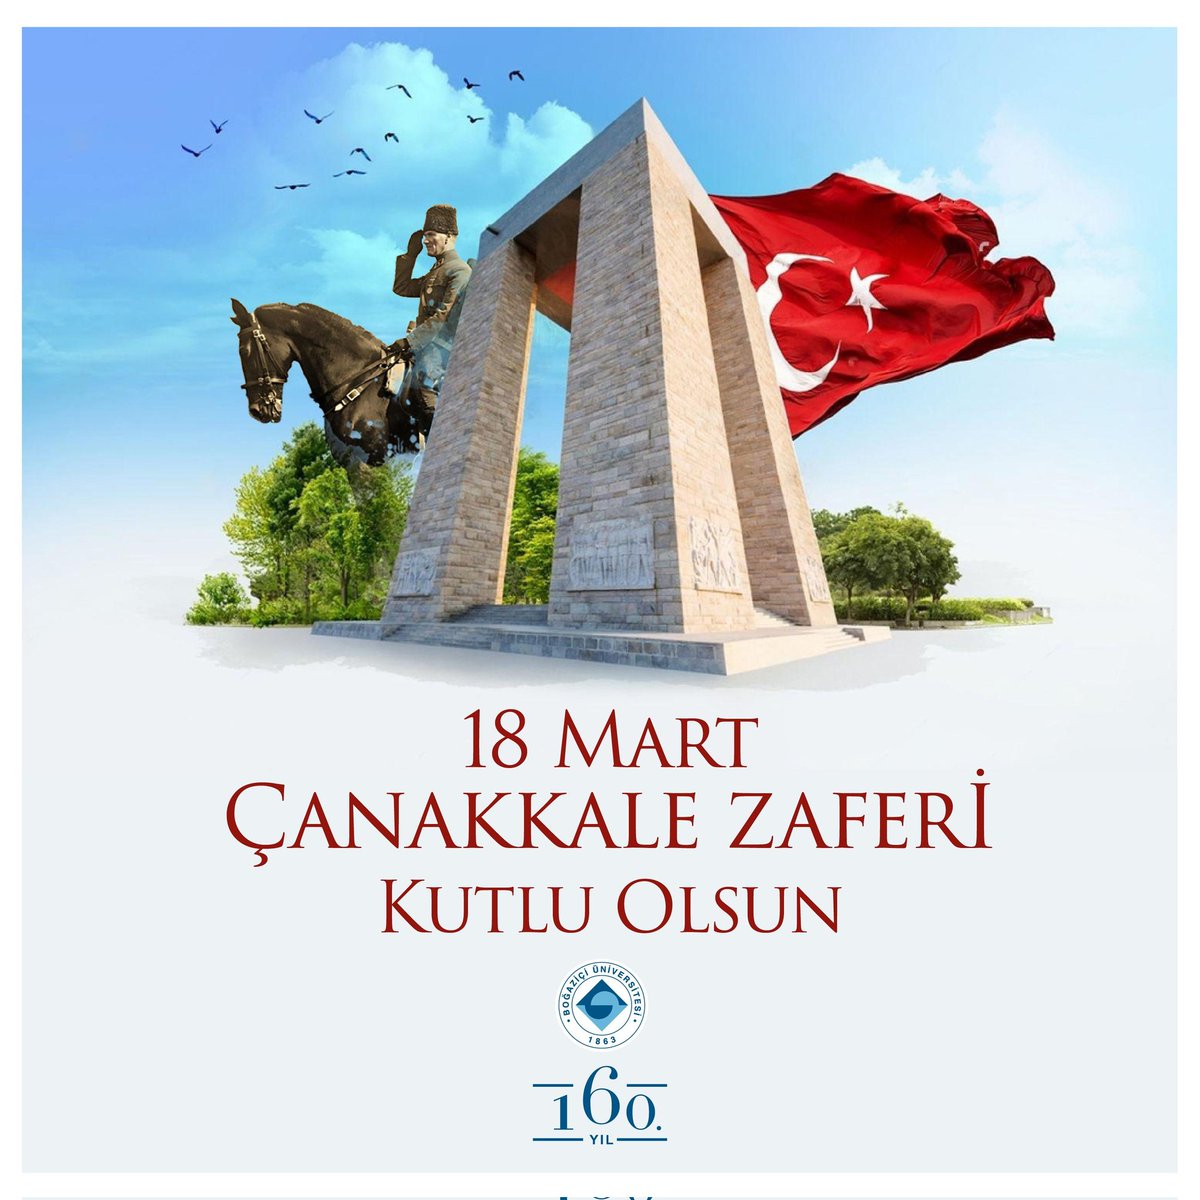 Bağımsız geleceğin miladı, kurtuluşun ilk adımı Çanakkale Zaferi'nin 109. yıl dönümü kutlu olsun!